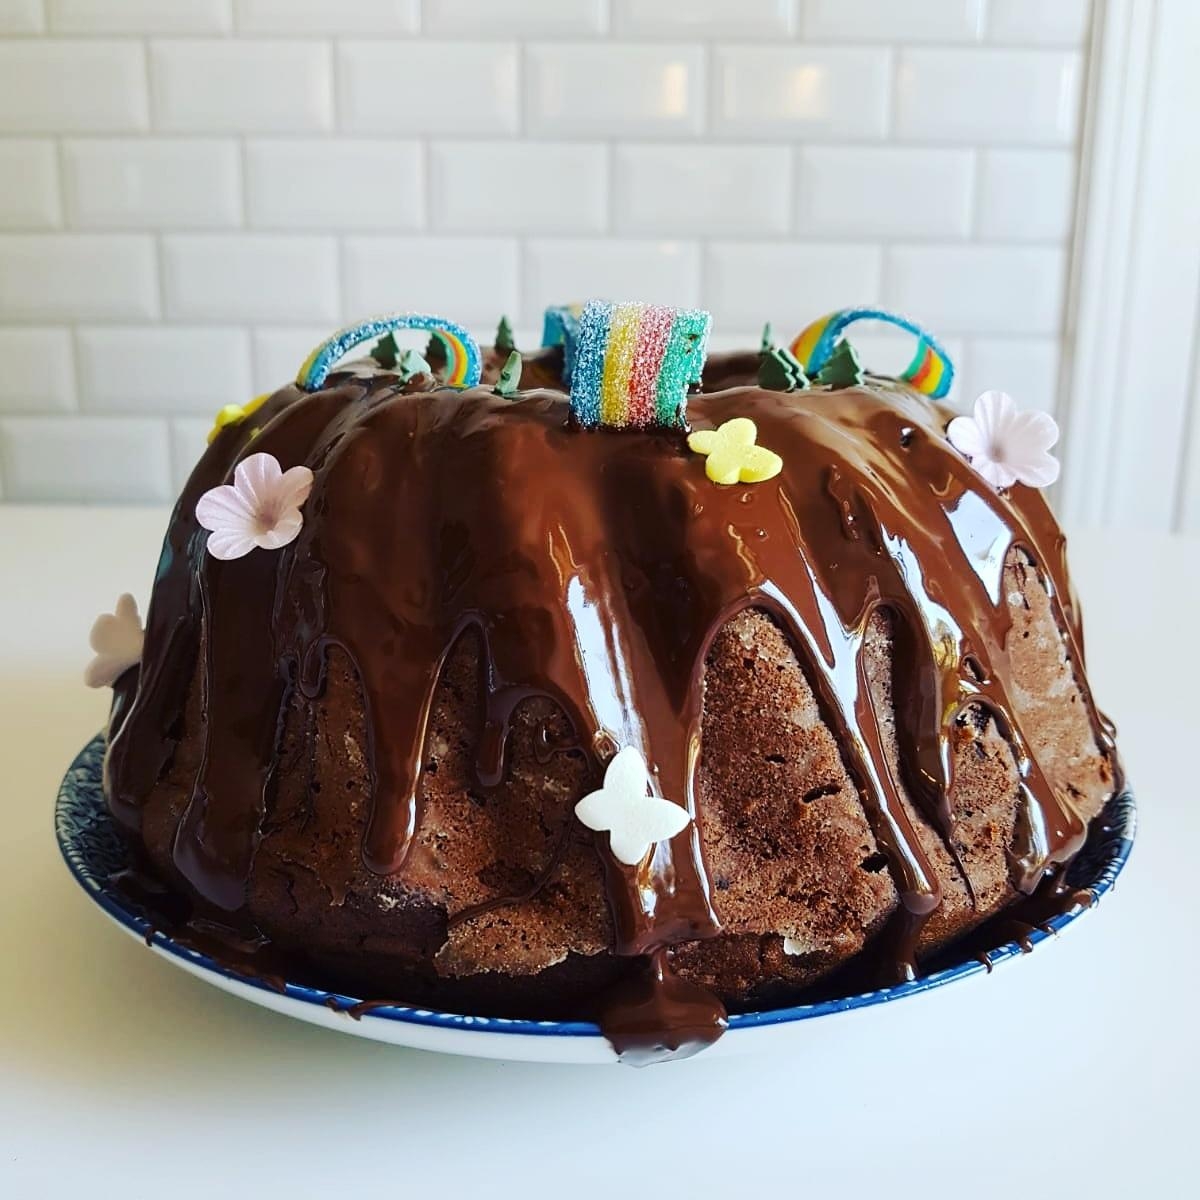 Schokoladenkuchen mit Regenbogen hilft immer ❤ #DIY #Schokolade #Schokokuchen #Kuchen #Party #Metrofliesen #Küche